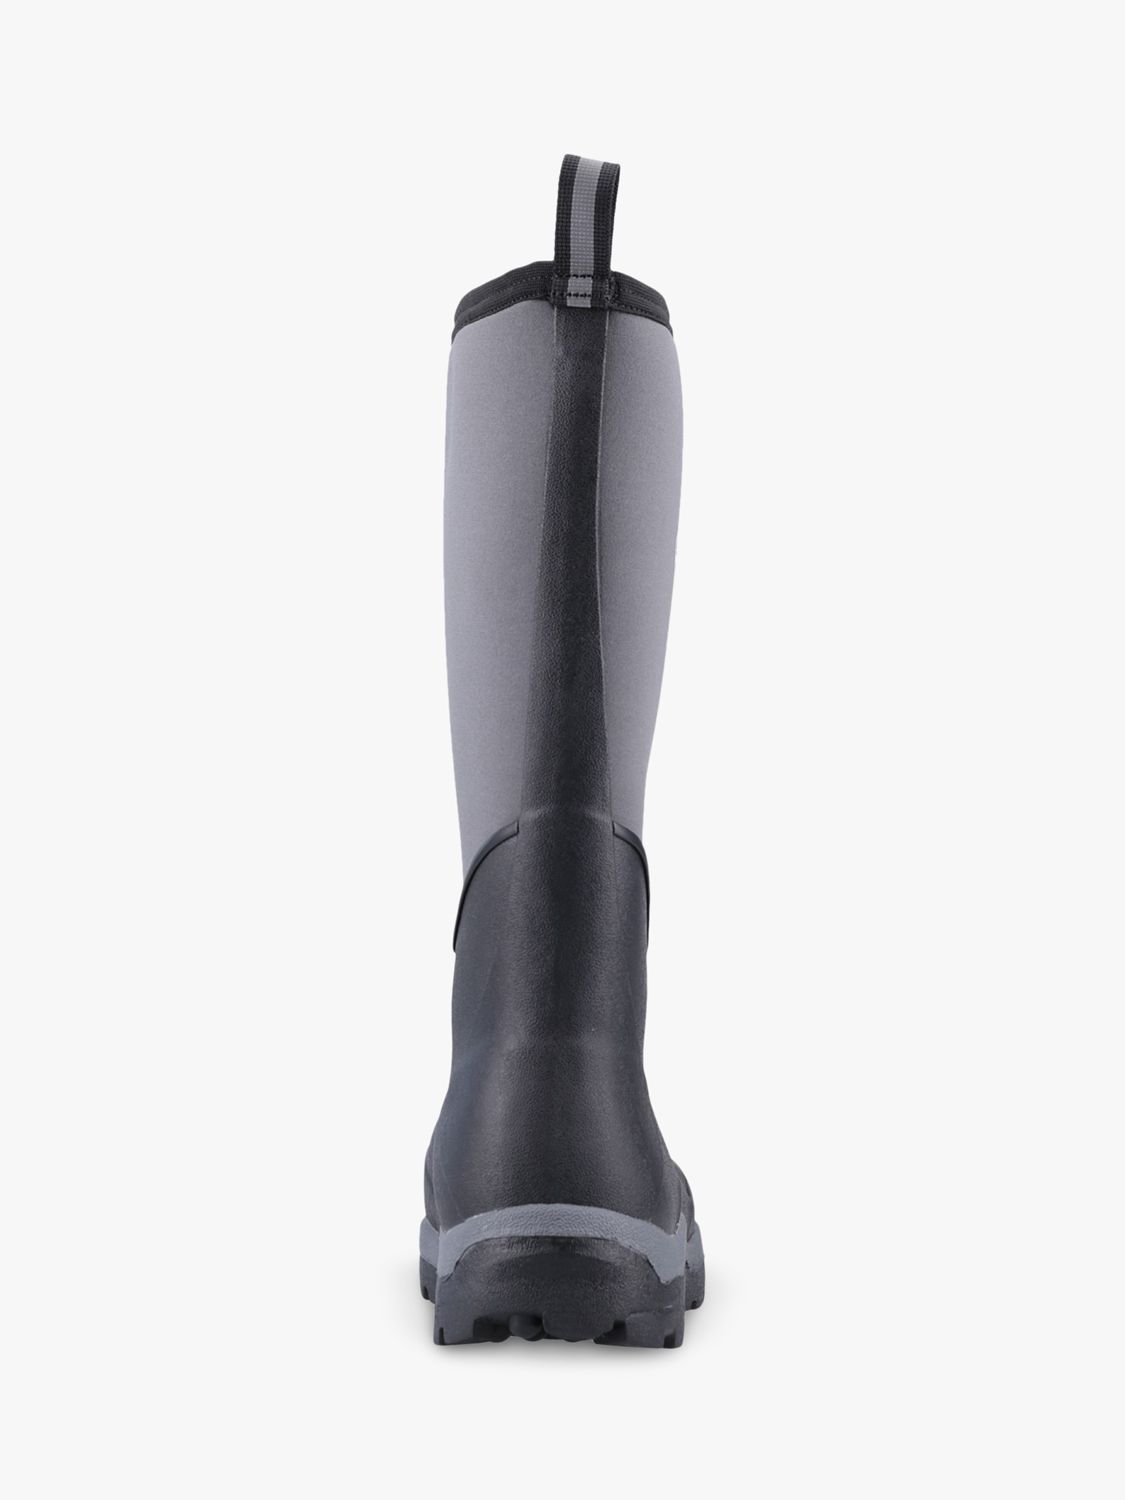 Muck Calder Tall Waterproof Wellington Boots, Black, 14